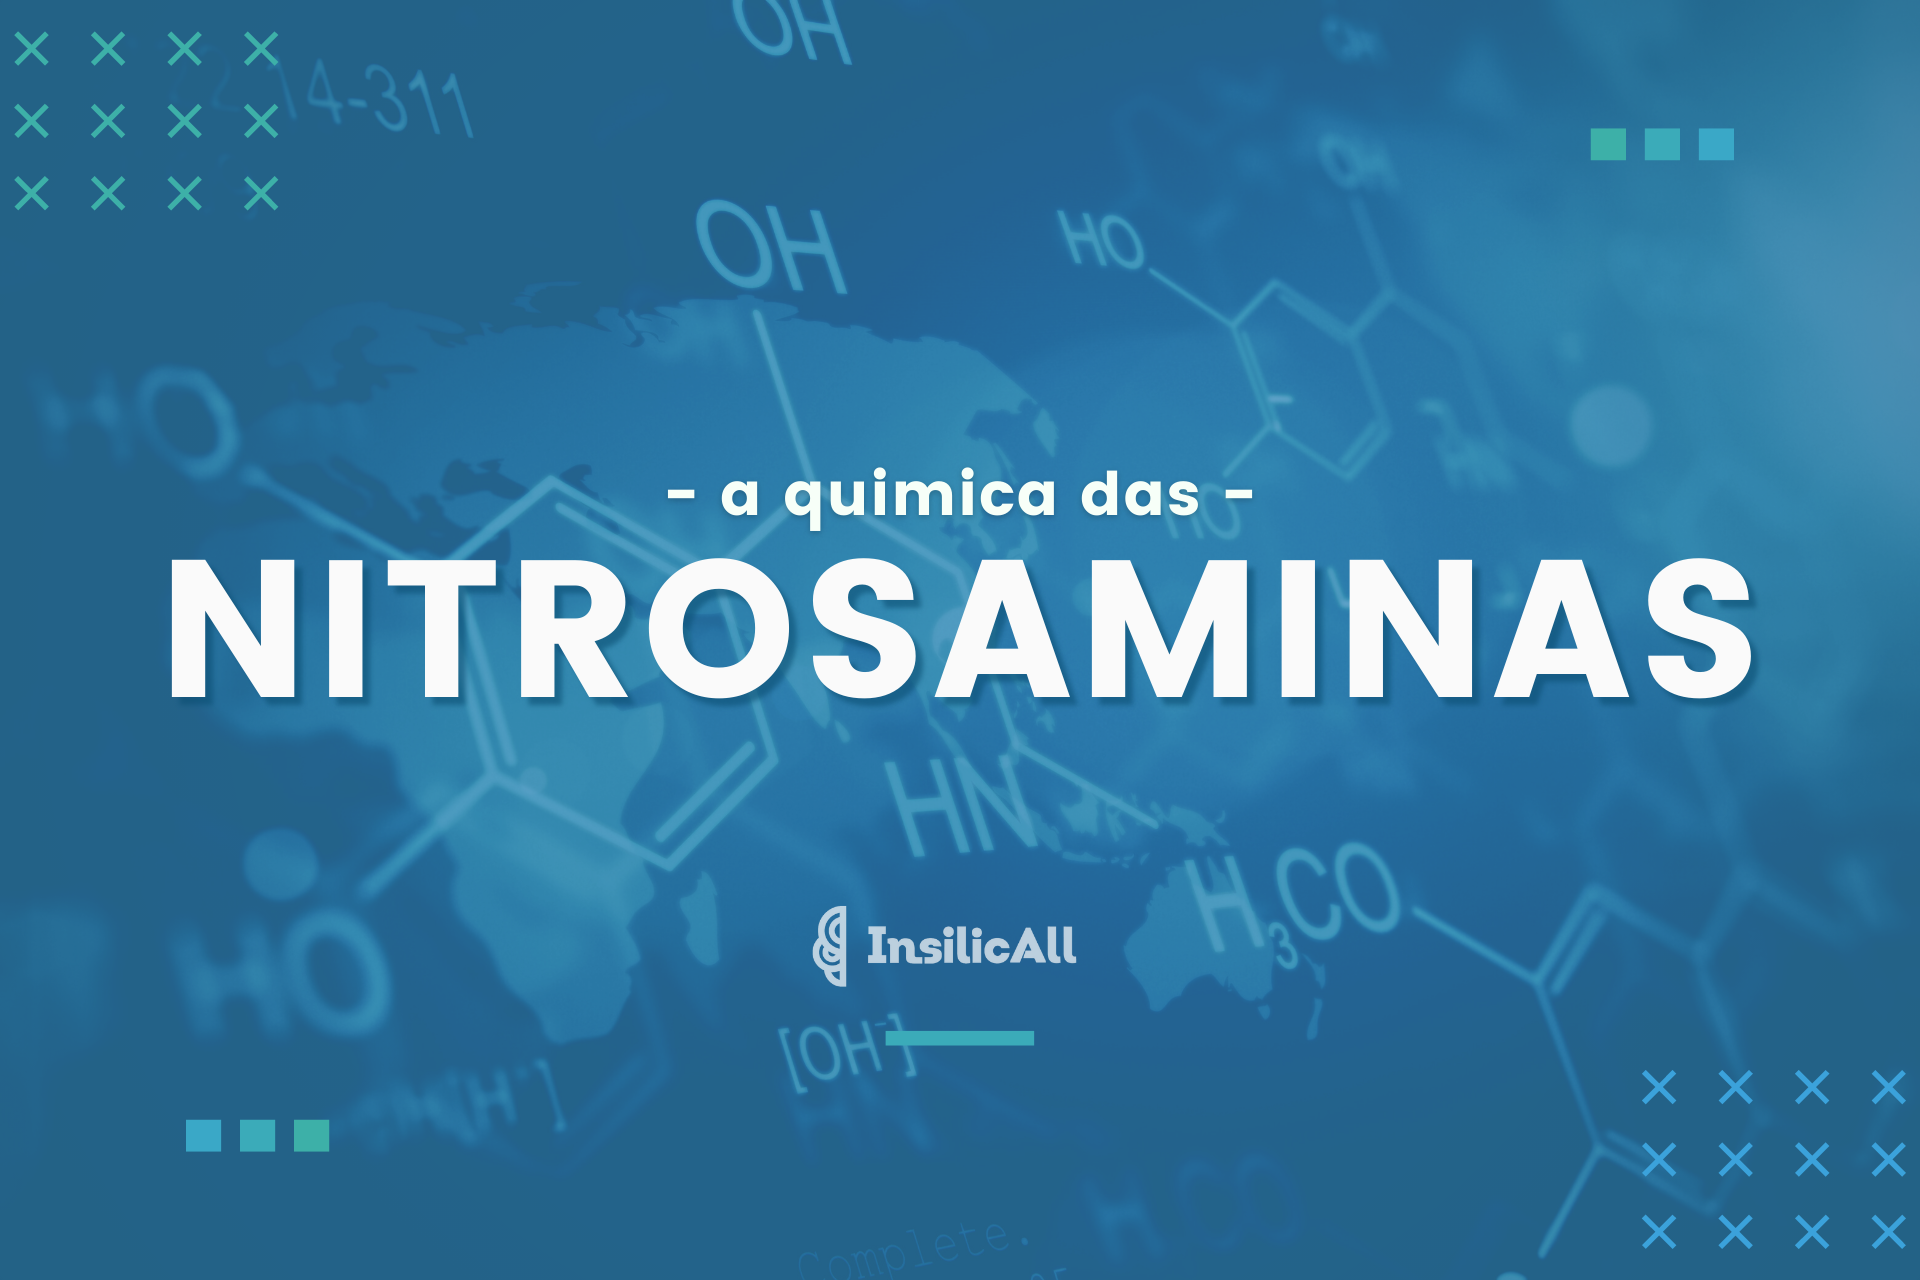 A quimica das nitrosaminas